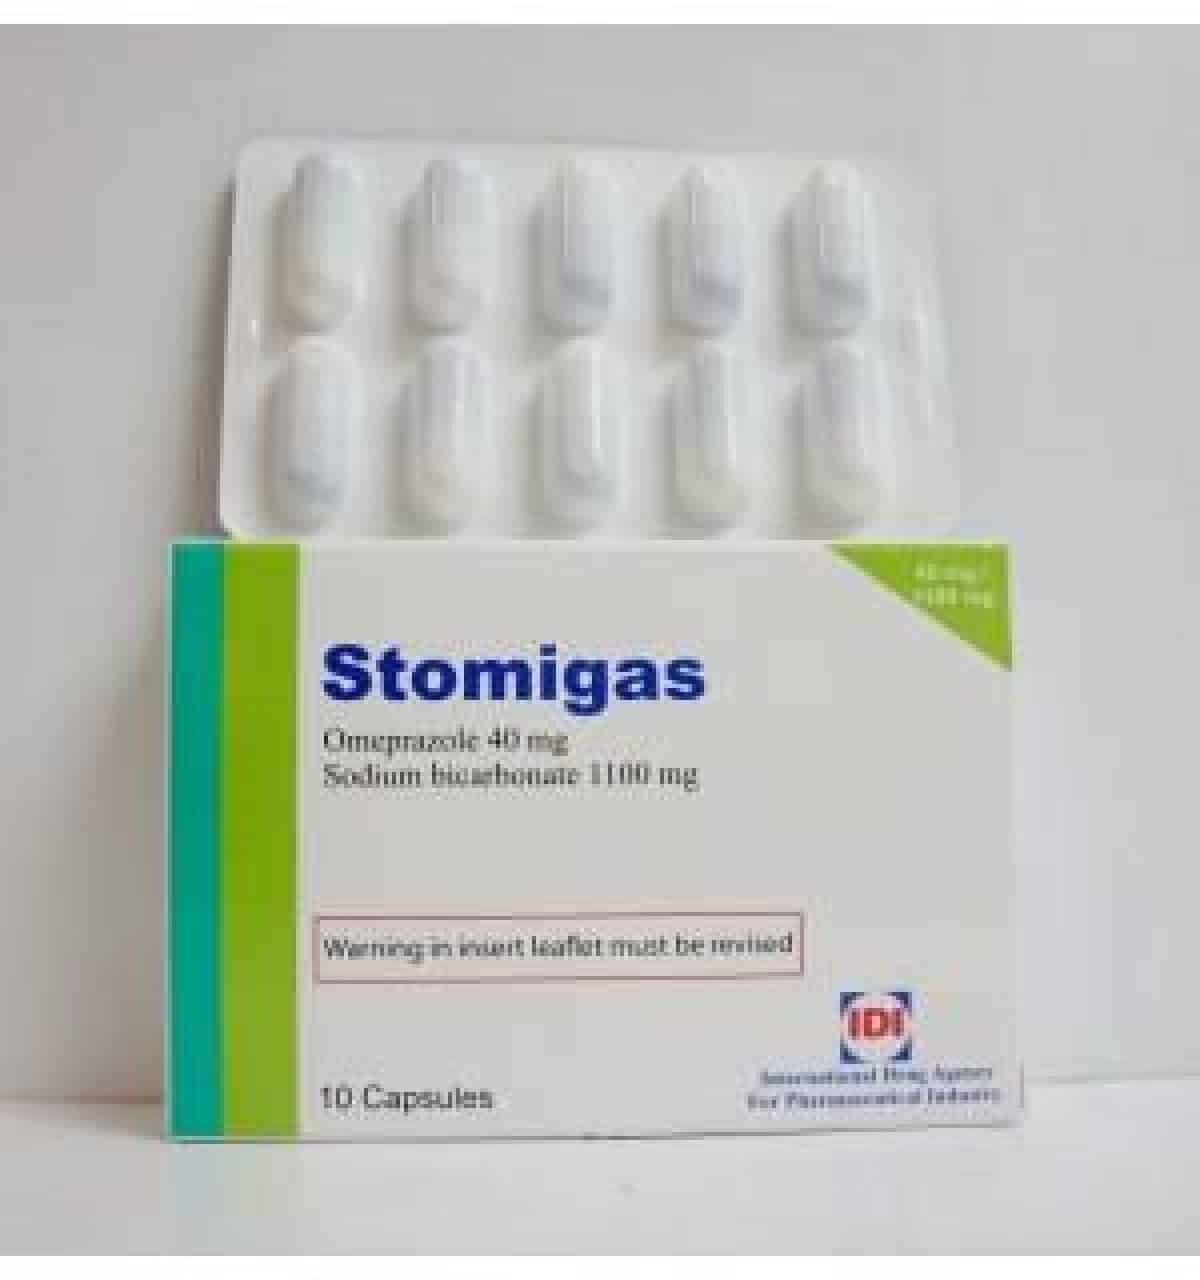 دواء ستوميغاس Stomigas لعلاج قرحة المعدة والحموضة وحرقة المعدة